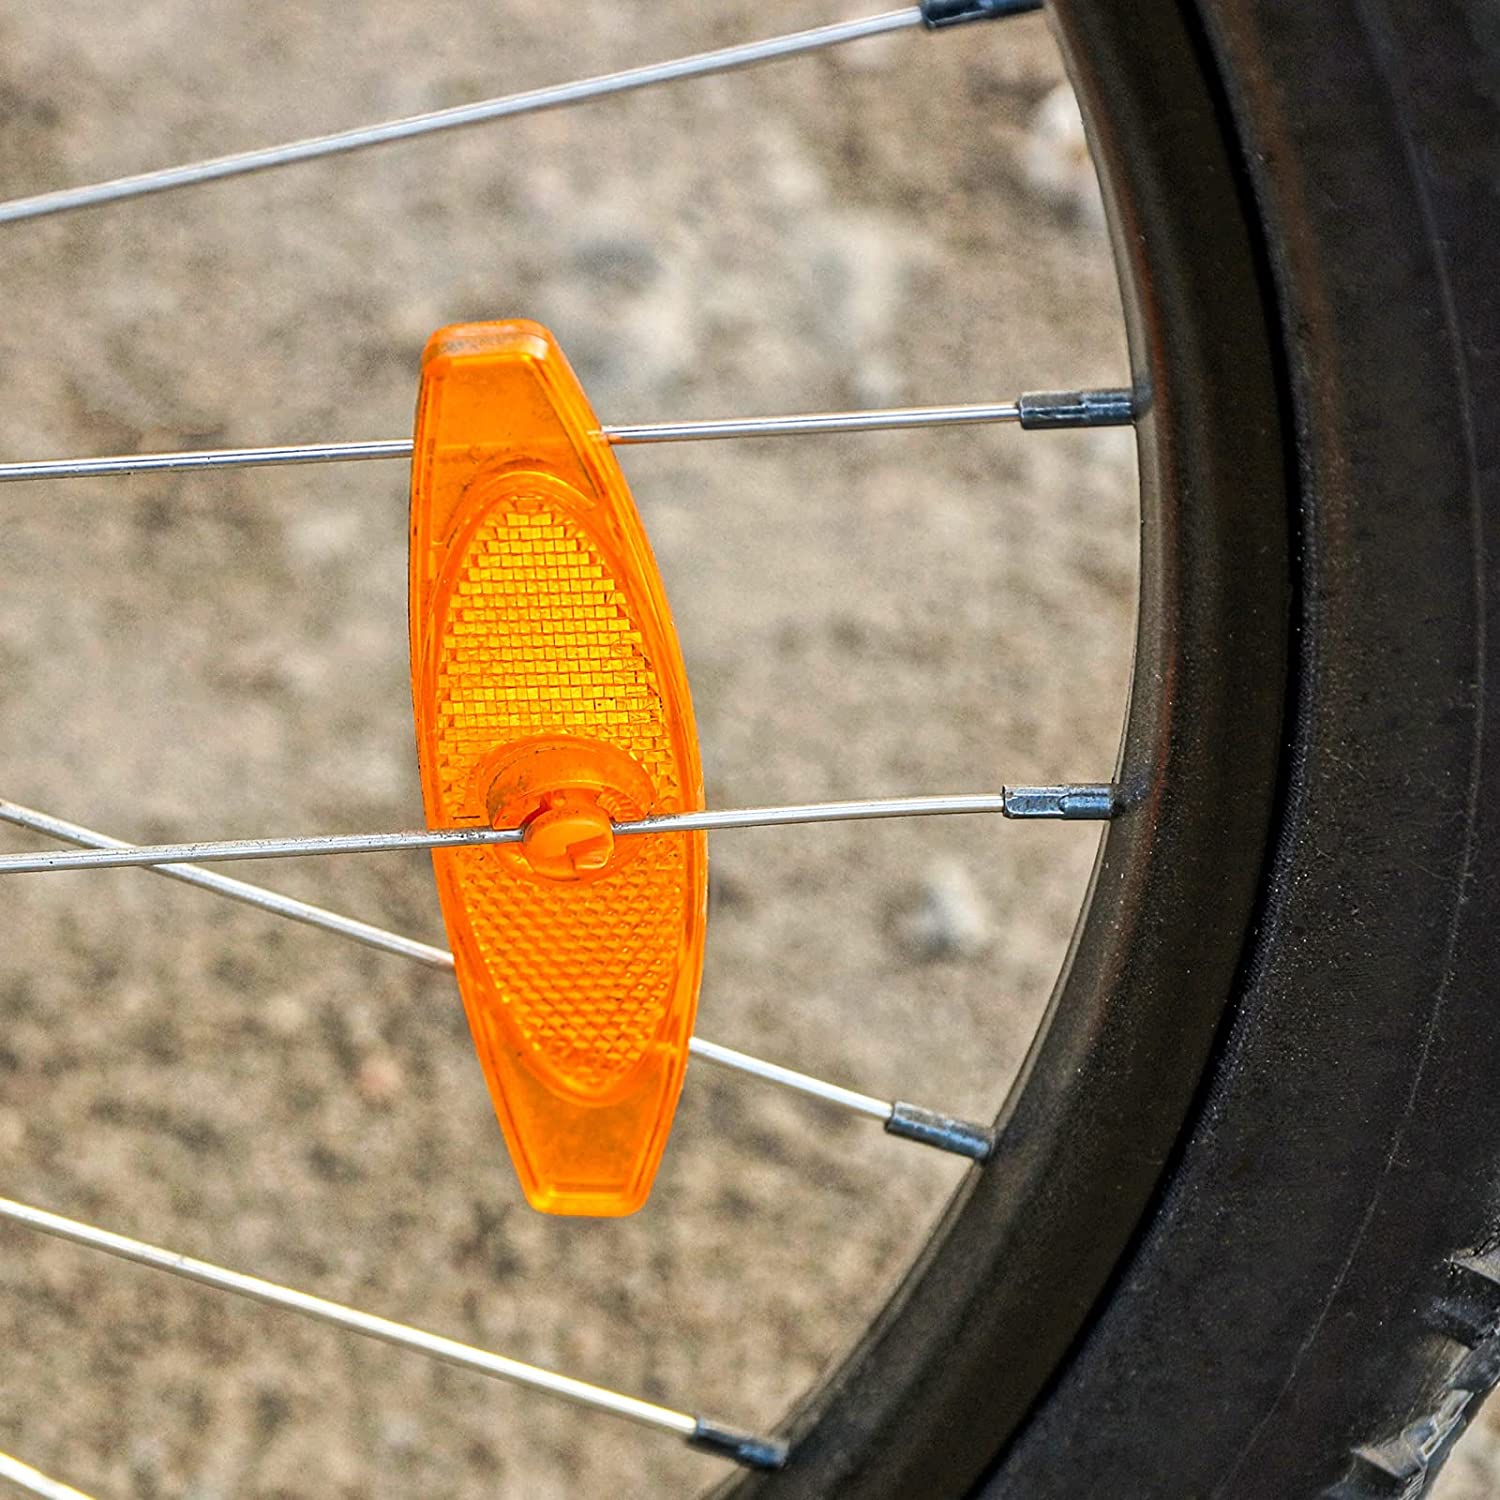 Réflecteurs pour Rayon Vélo Réflecteur de Vélo pour Roues Vélo Route  Réflecteurs pour Conduite de Nuit